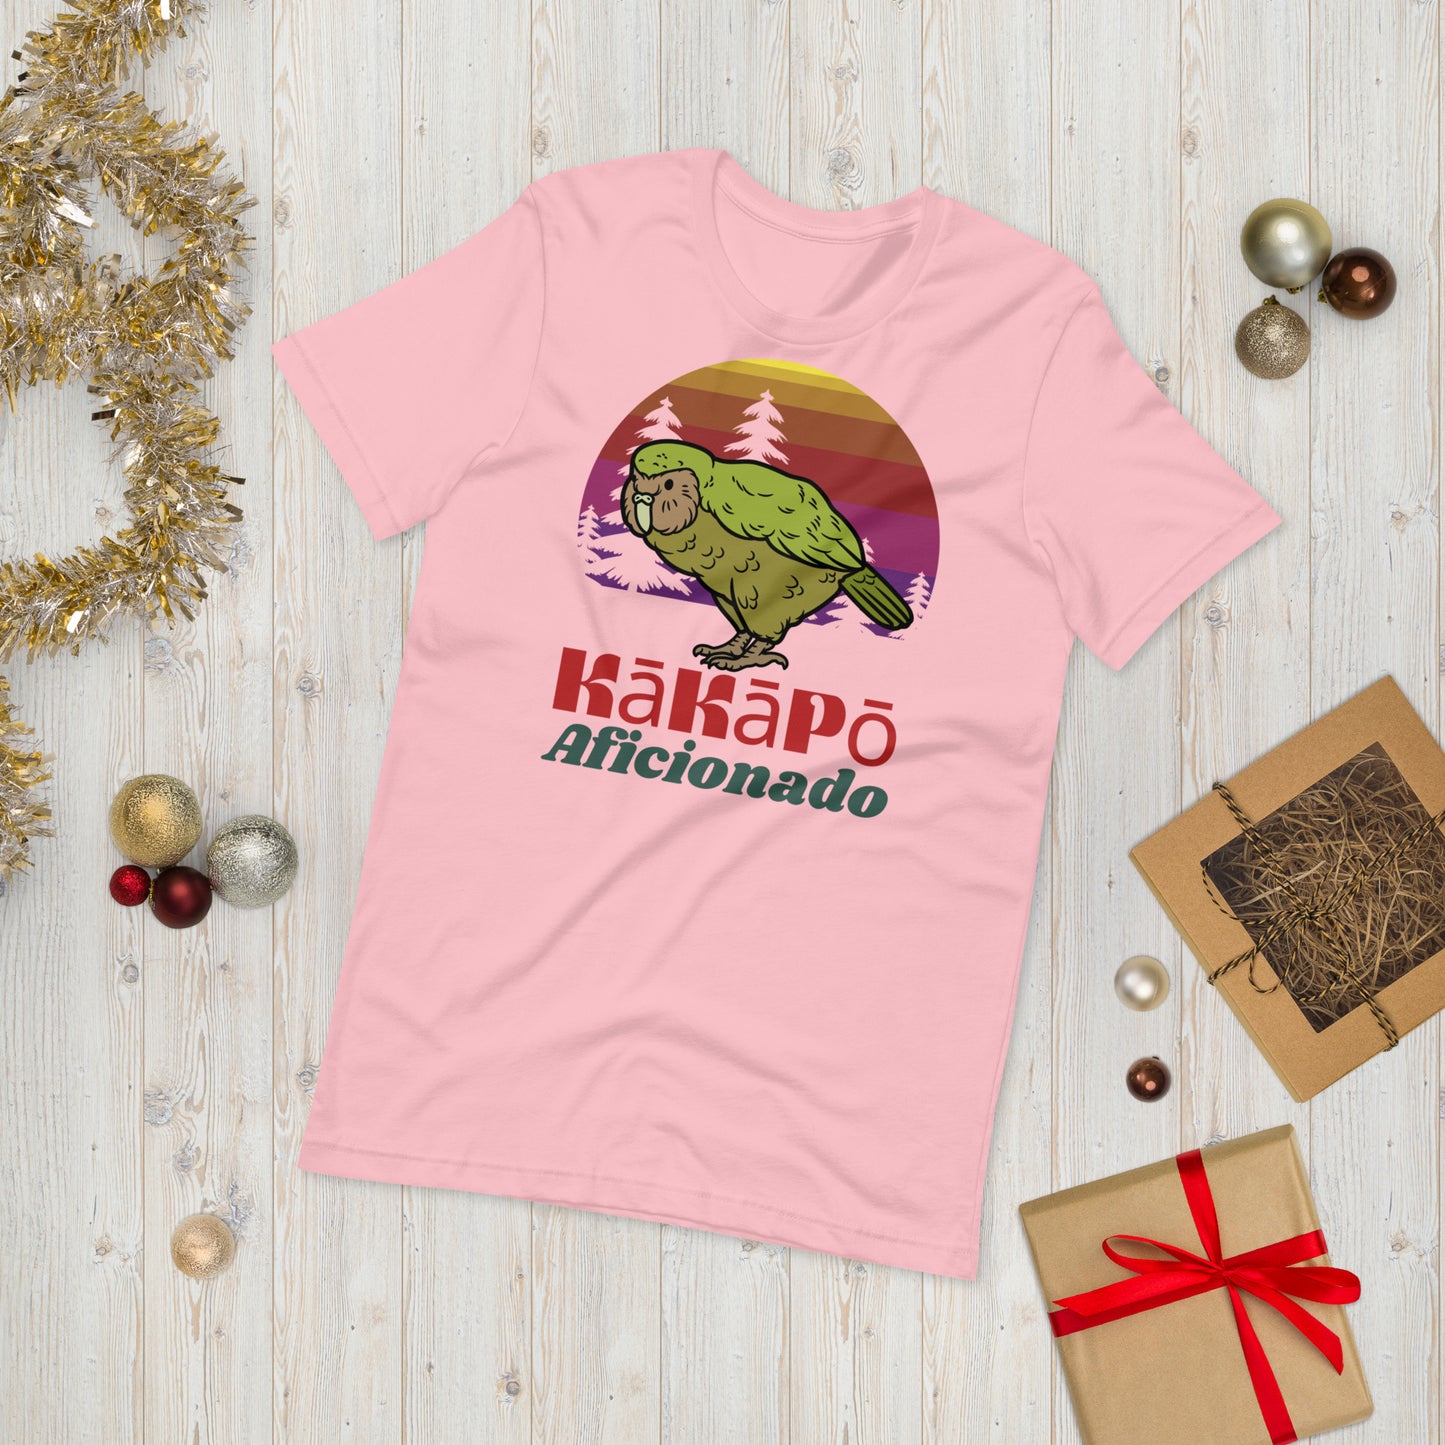 Men's Kakapo Aficionado